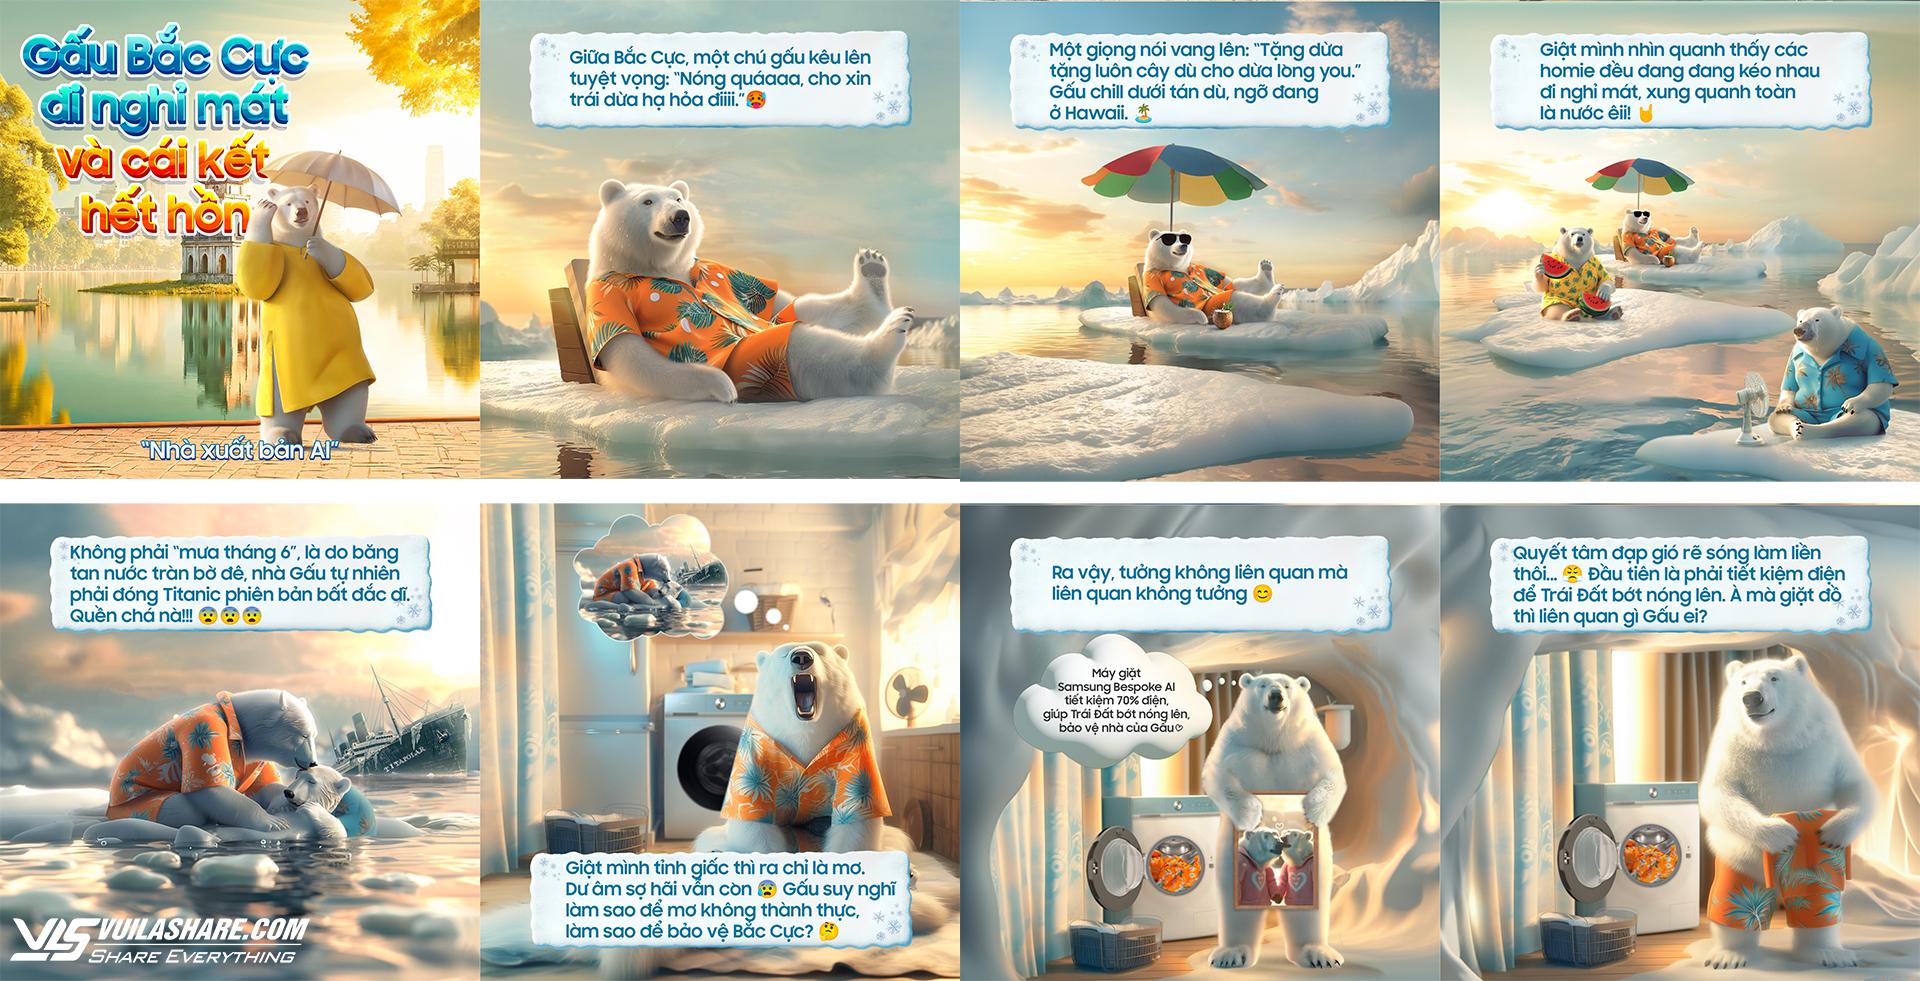 Bộ ảnh "Gấu Bắc Cực đi nghỉ mát và cái kết hết hồn" do Trí tuệ nhân tạo (AI) sáng tác